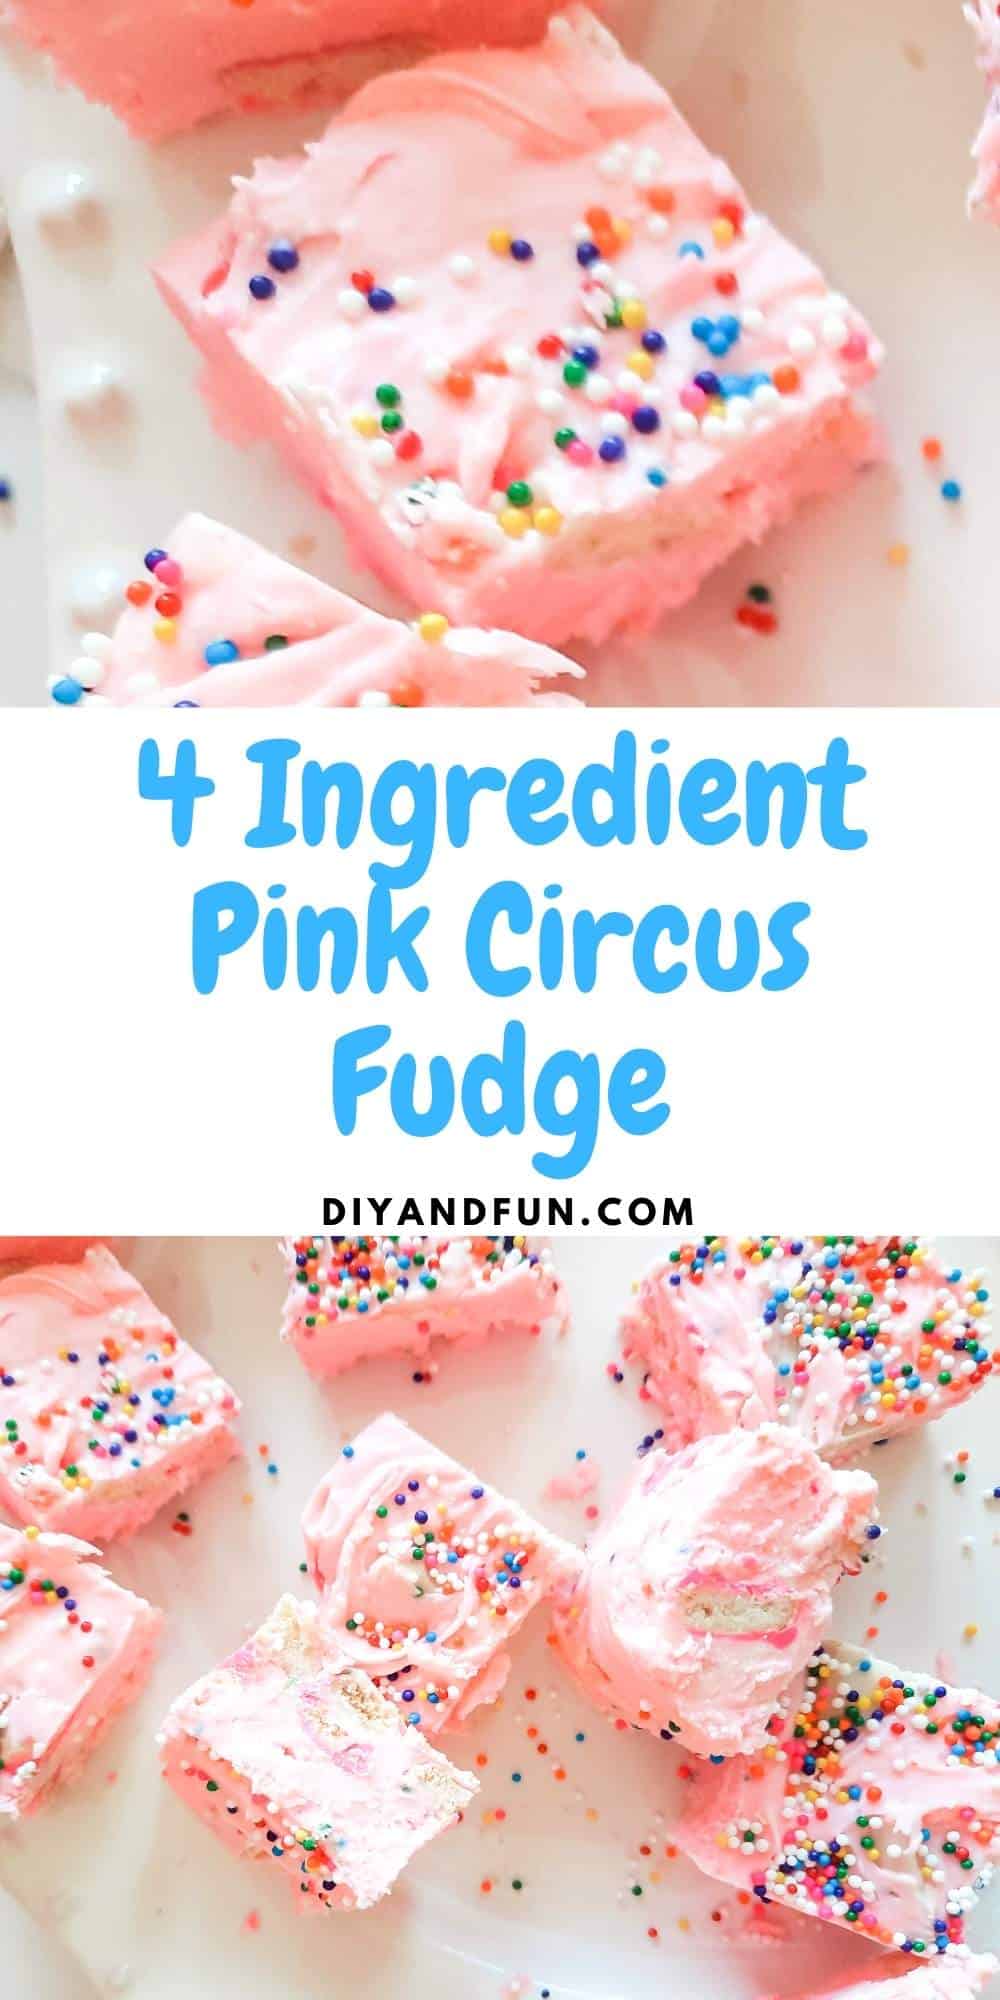 4 Ingredient Pink Circus Fudge